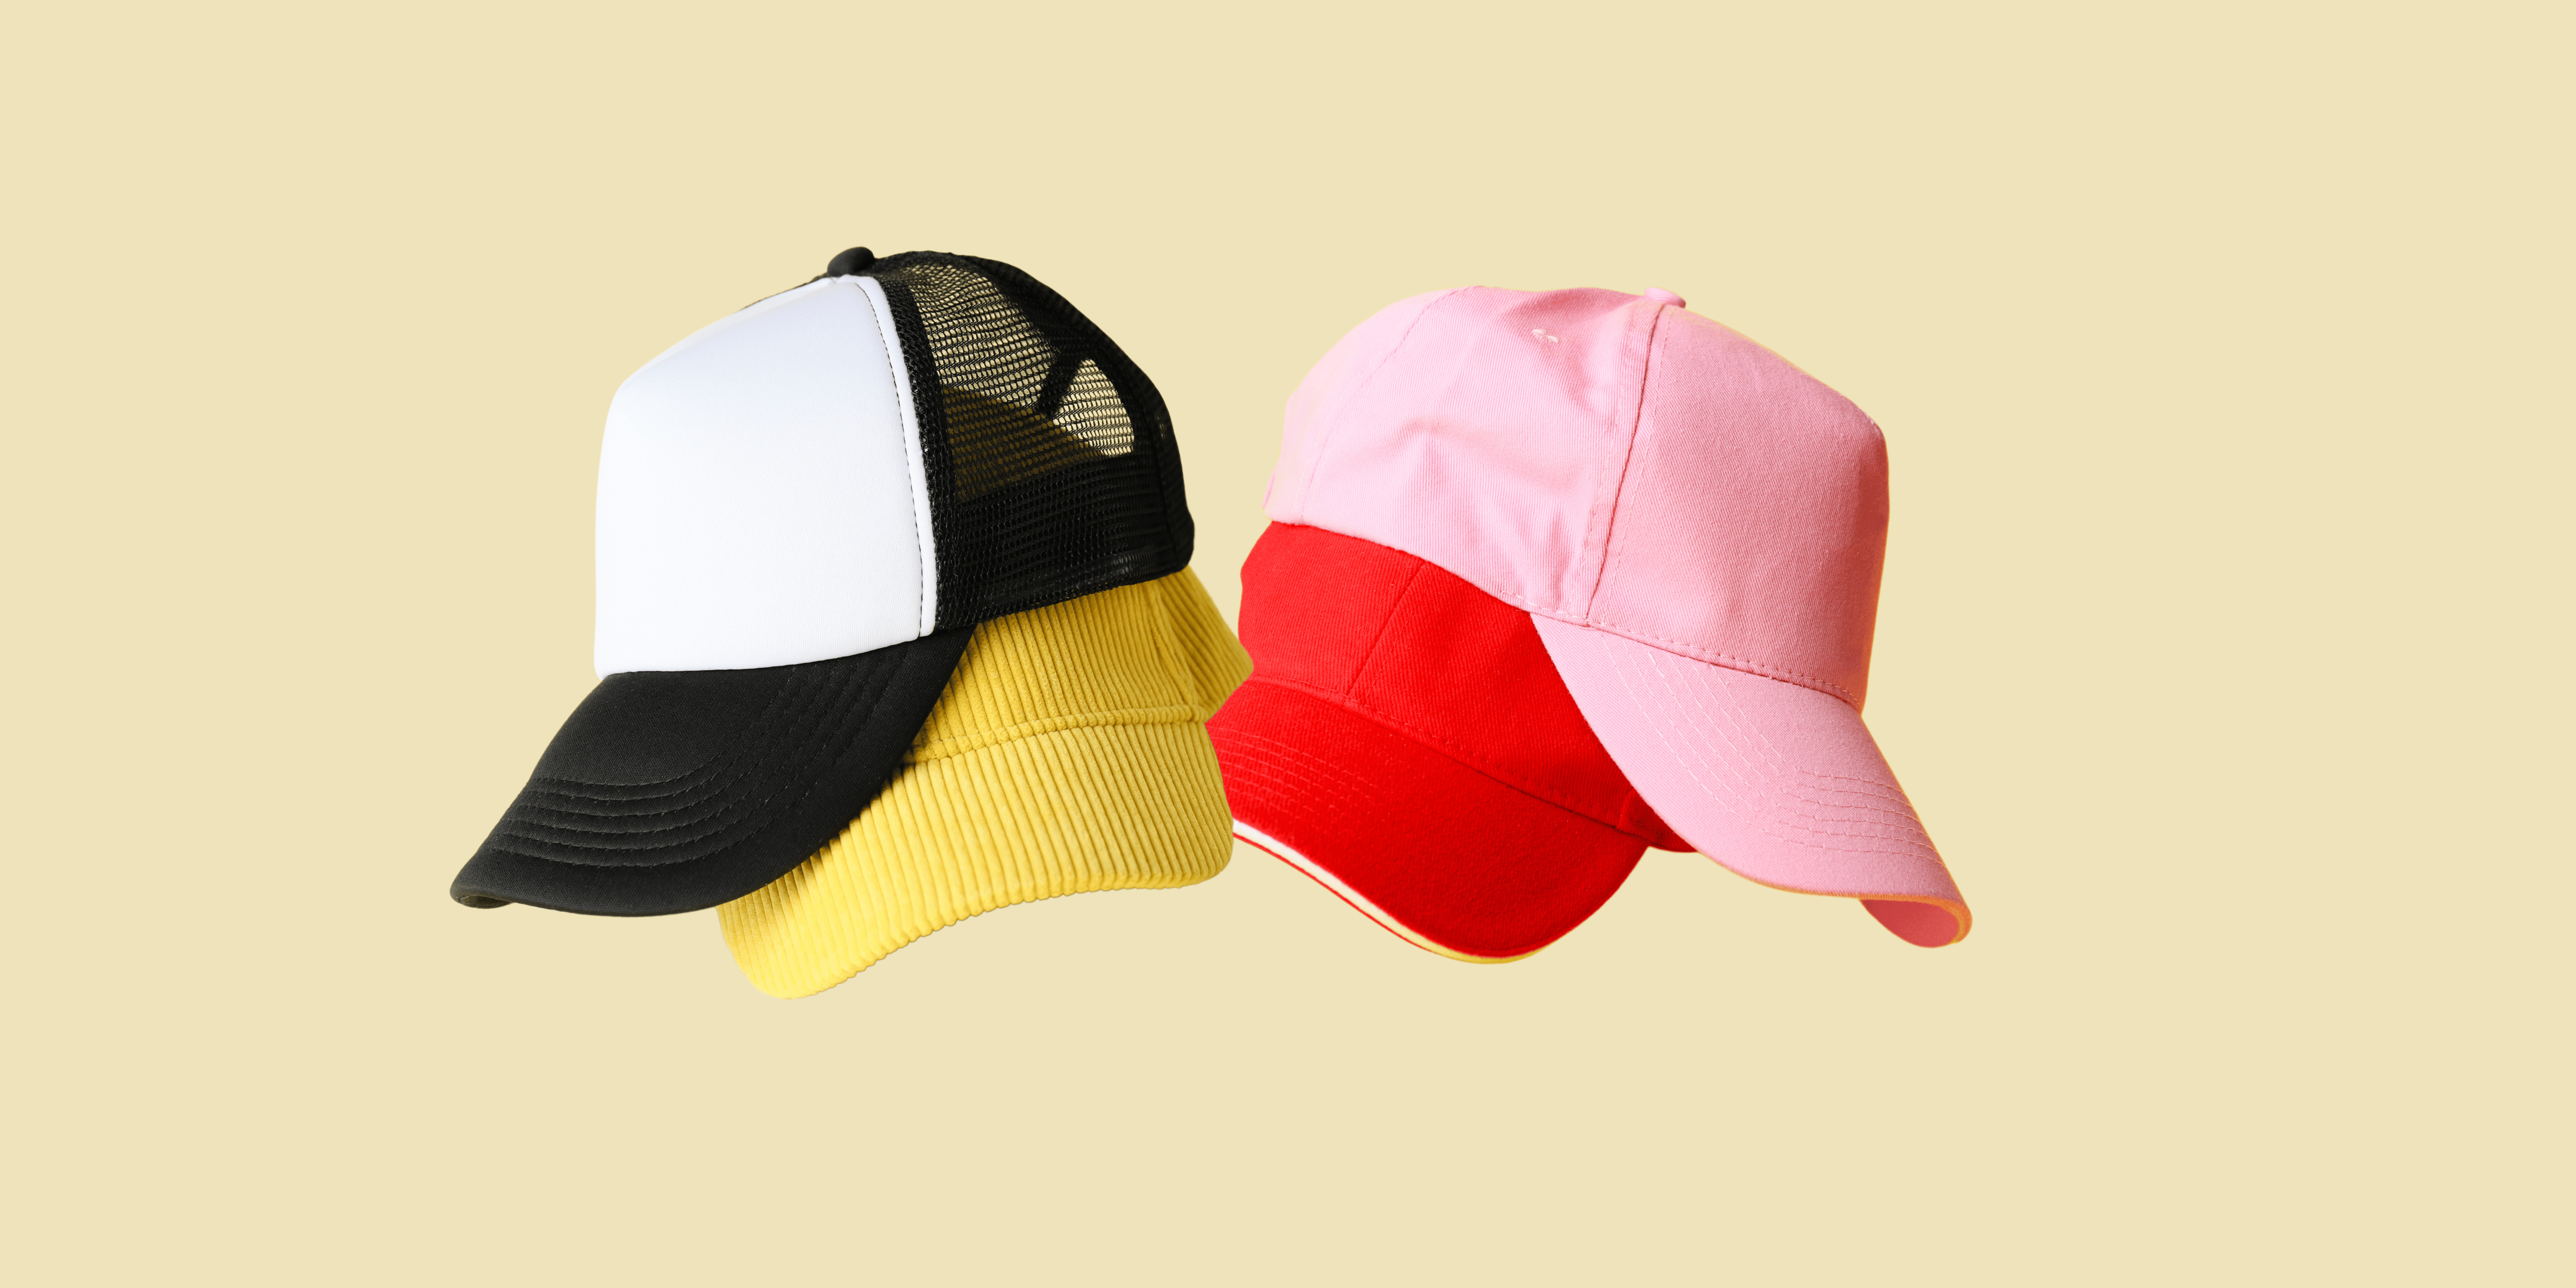 baseball caps for Men and women. Animal print baseball caps and mesh baseball caps